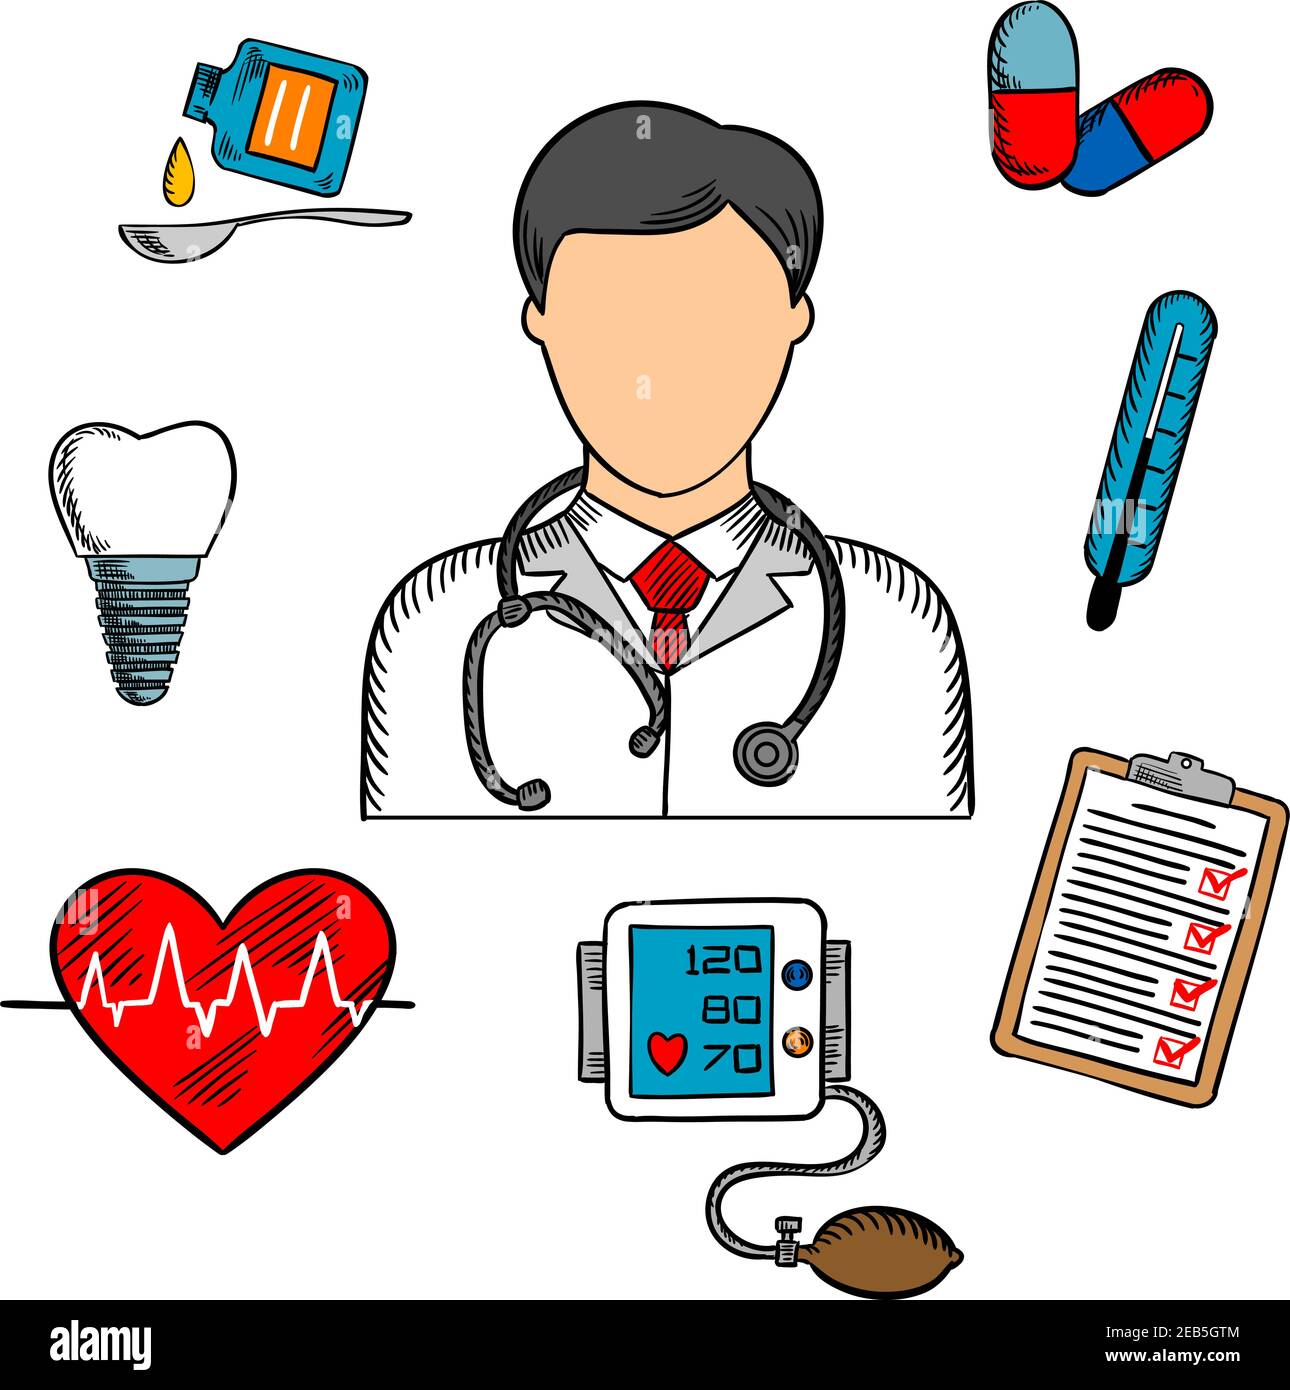 Icônes médicales avec un médecin entouré par un thermomètre, une dent, des pilules, des médicaments, un graphique, un battement de coeur et un ECG. Icônes vectorielles esquissées colorées Illustration de Vecteur